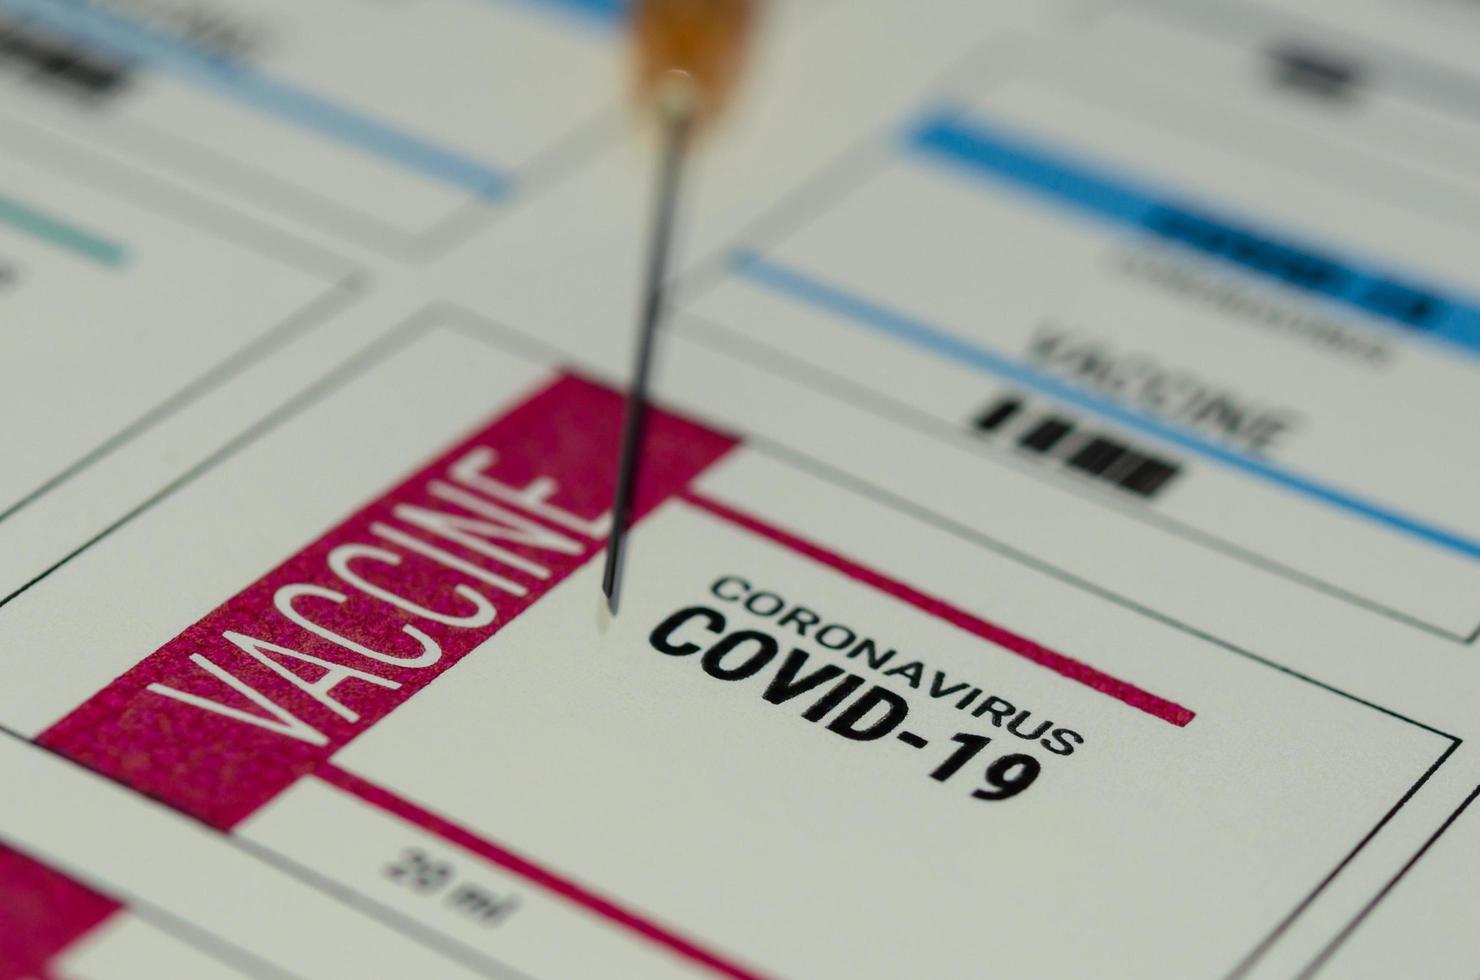 ett koronavirusvaccinmärke för covid-19 foto